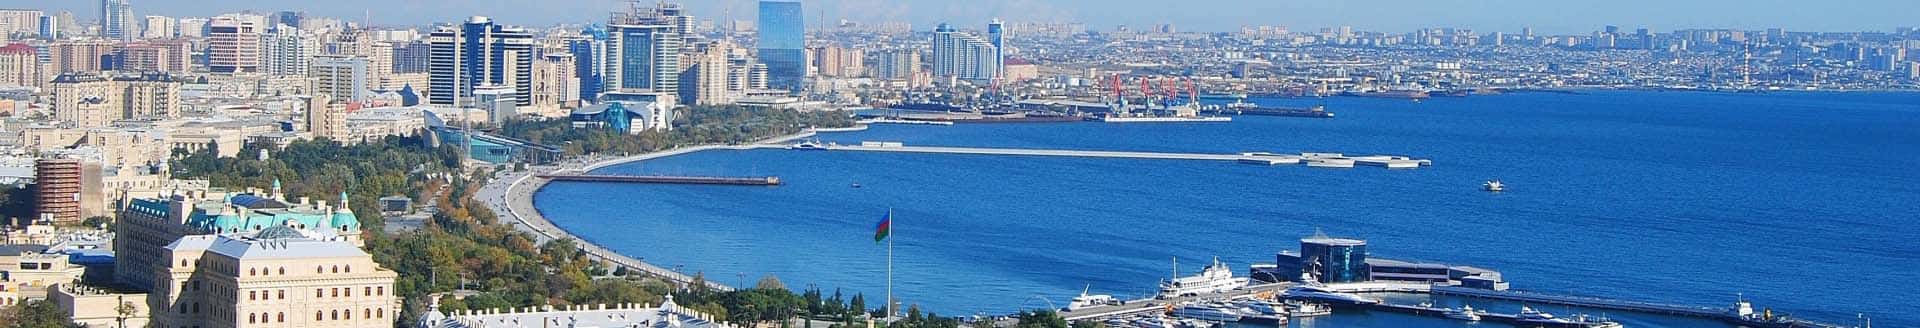 azerbaijan visit visa